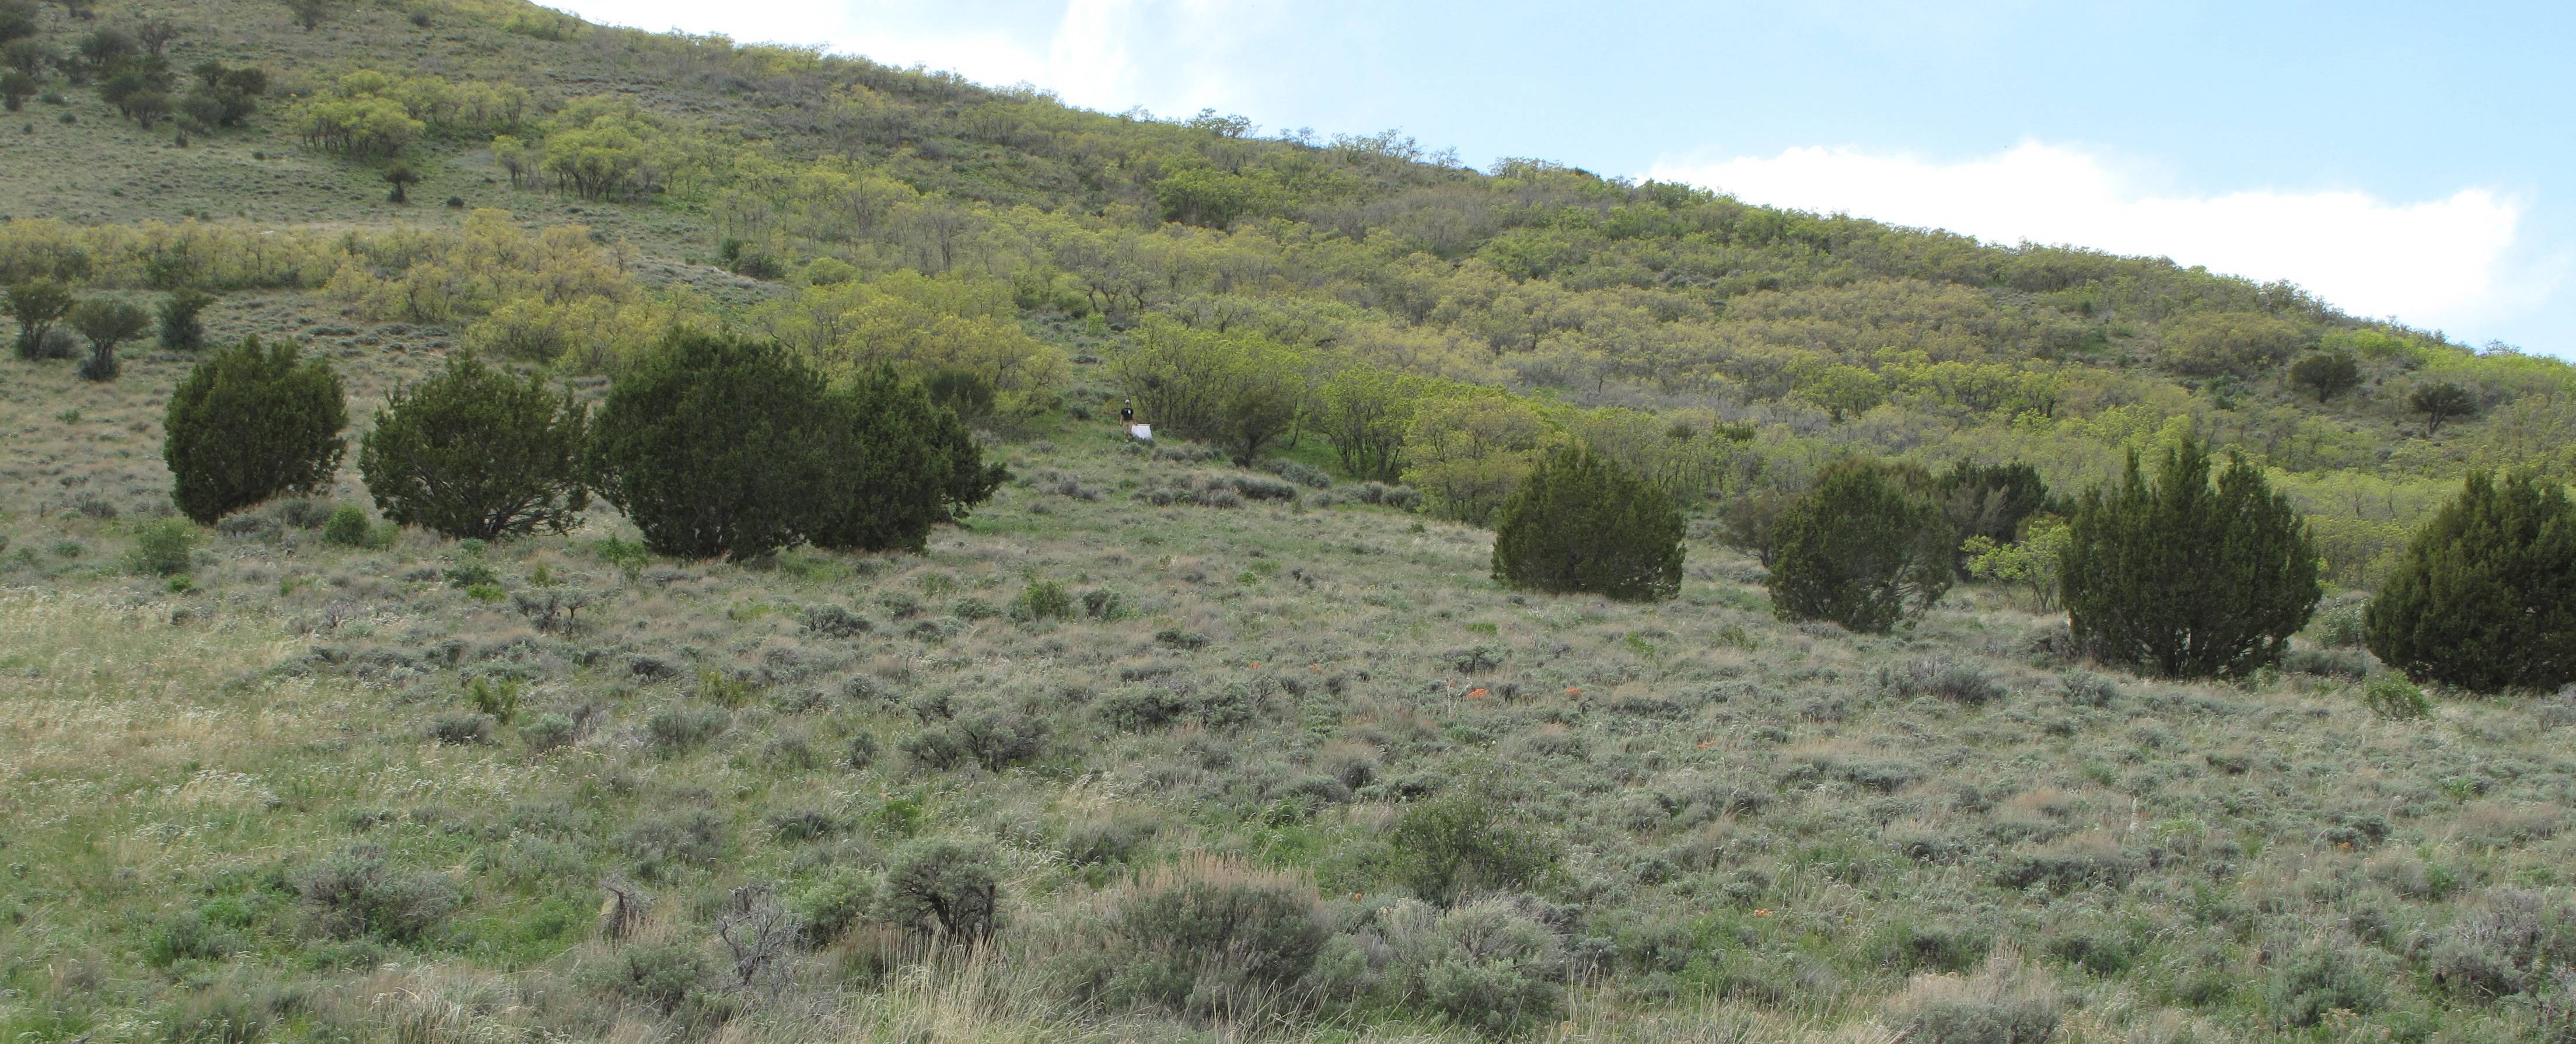 Fig. 7. Tick habitat containing (Juniperis spp.), big sagebrush (Artemisia tridentata), black sagebrush (Artemisia nova), and grasses